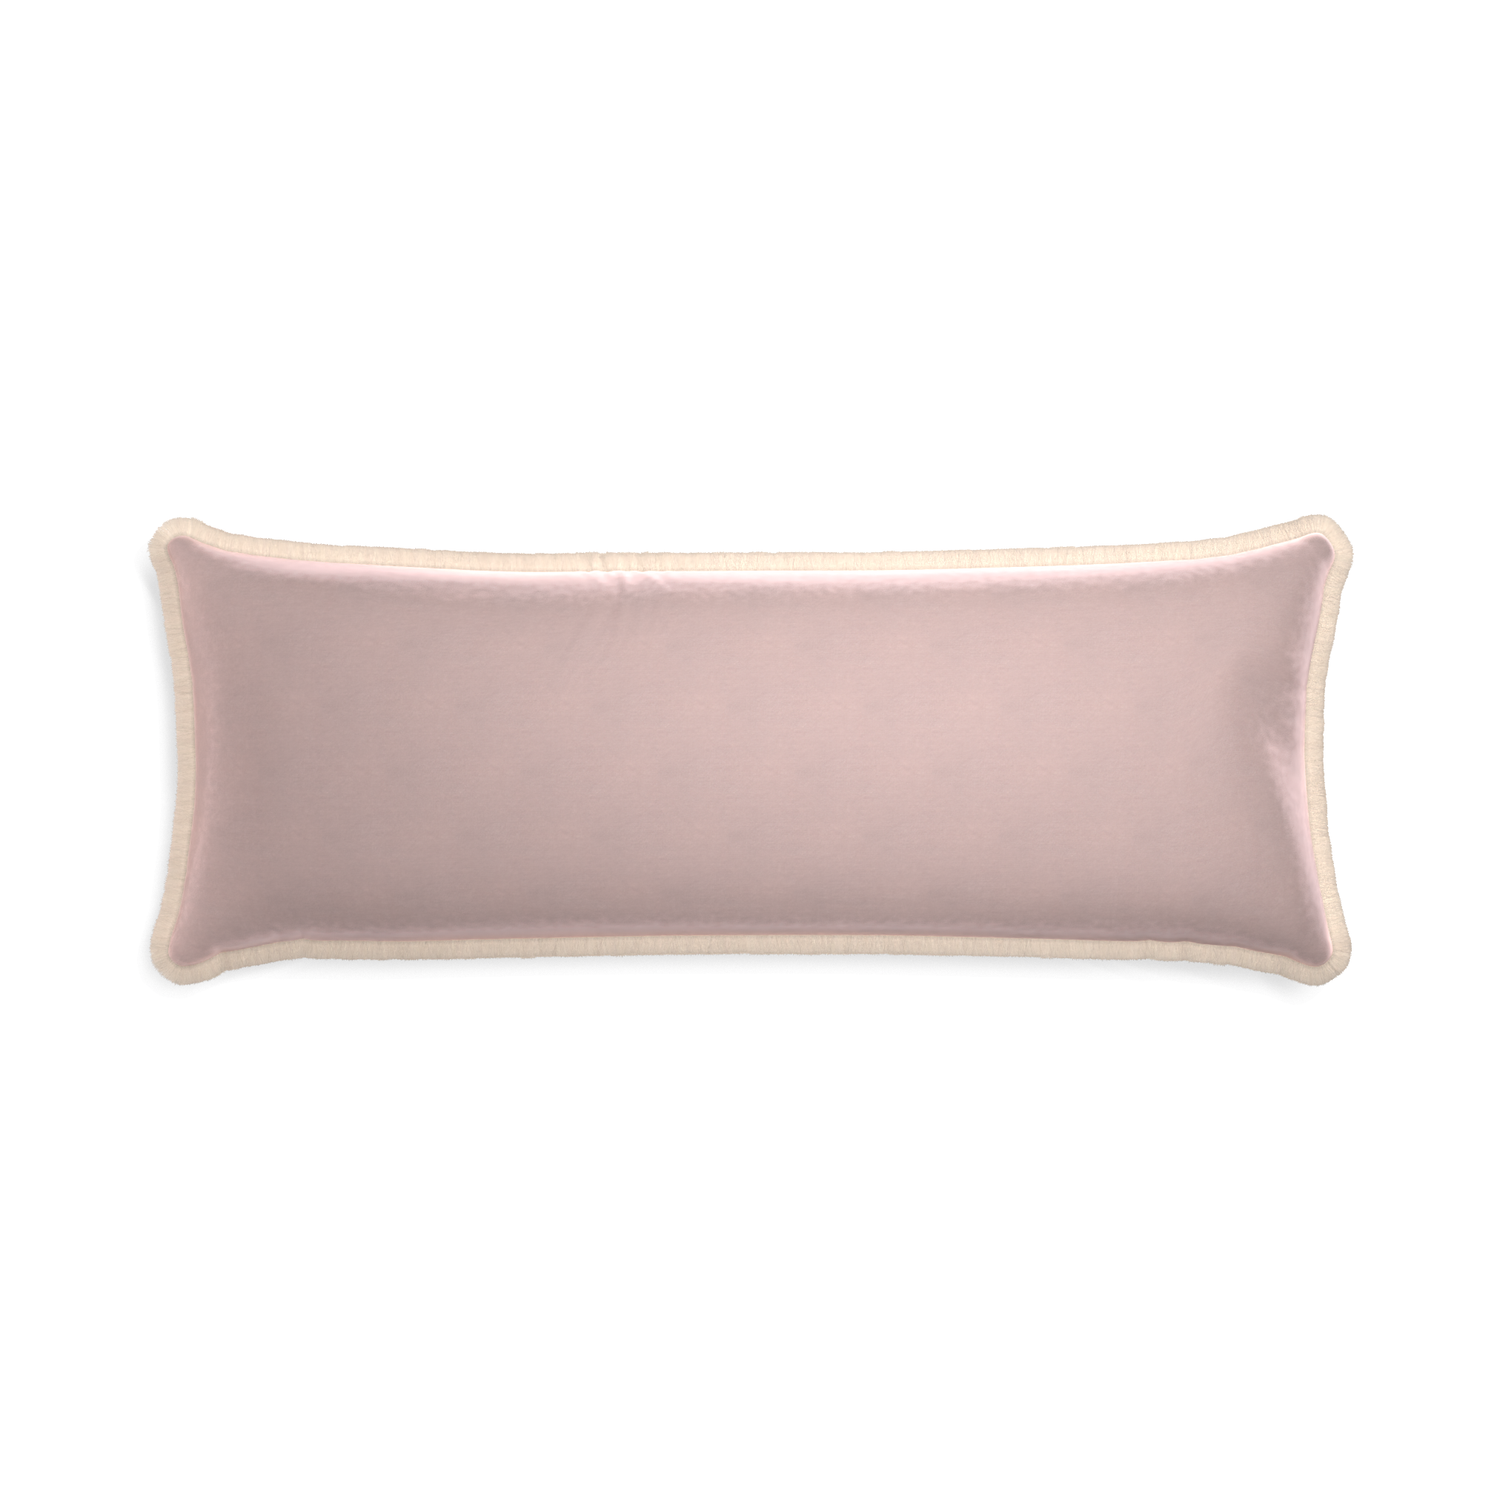 rectangle light pink velvet pillow with cream fringe 